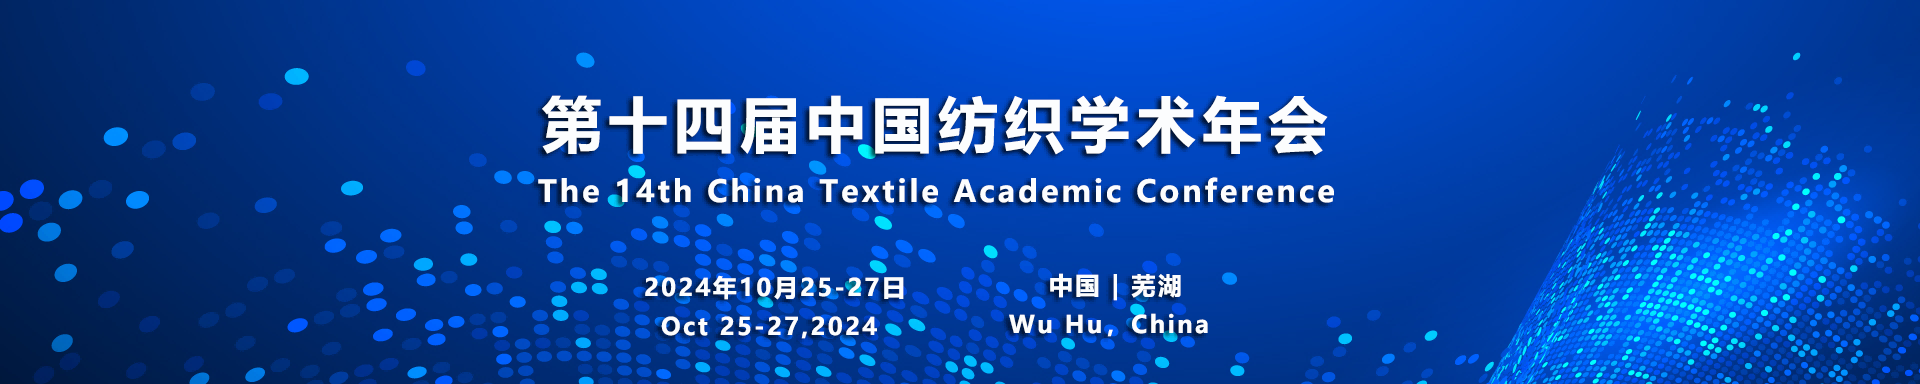 简要日程 - 第十四届中国纺织学术年会